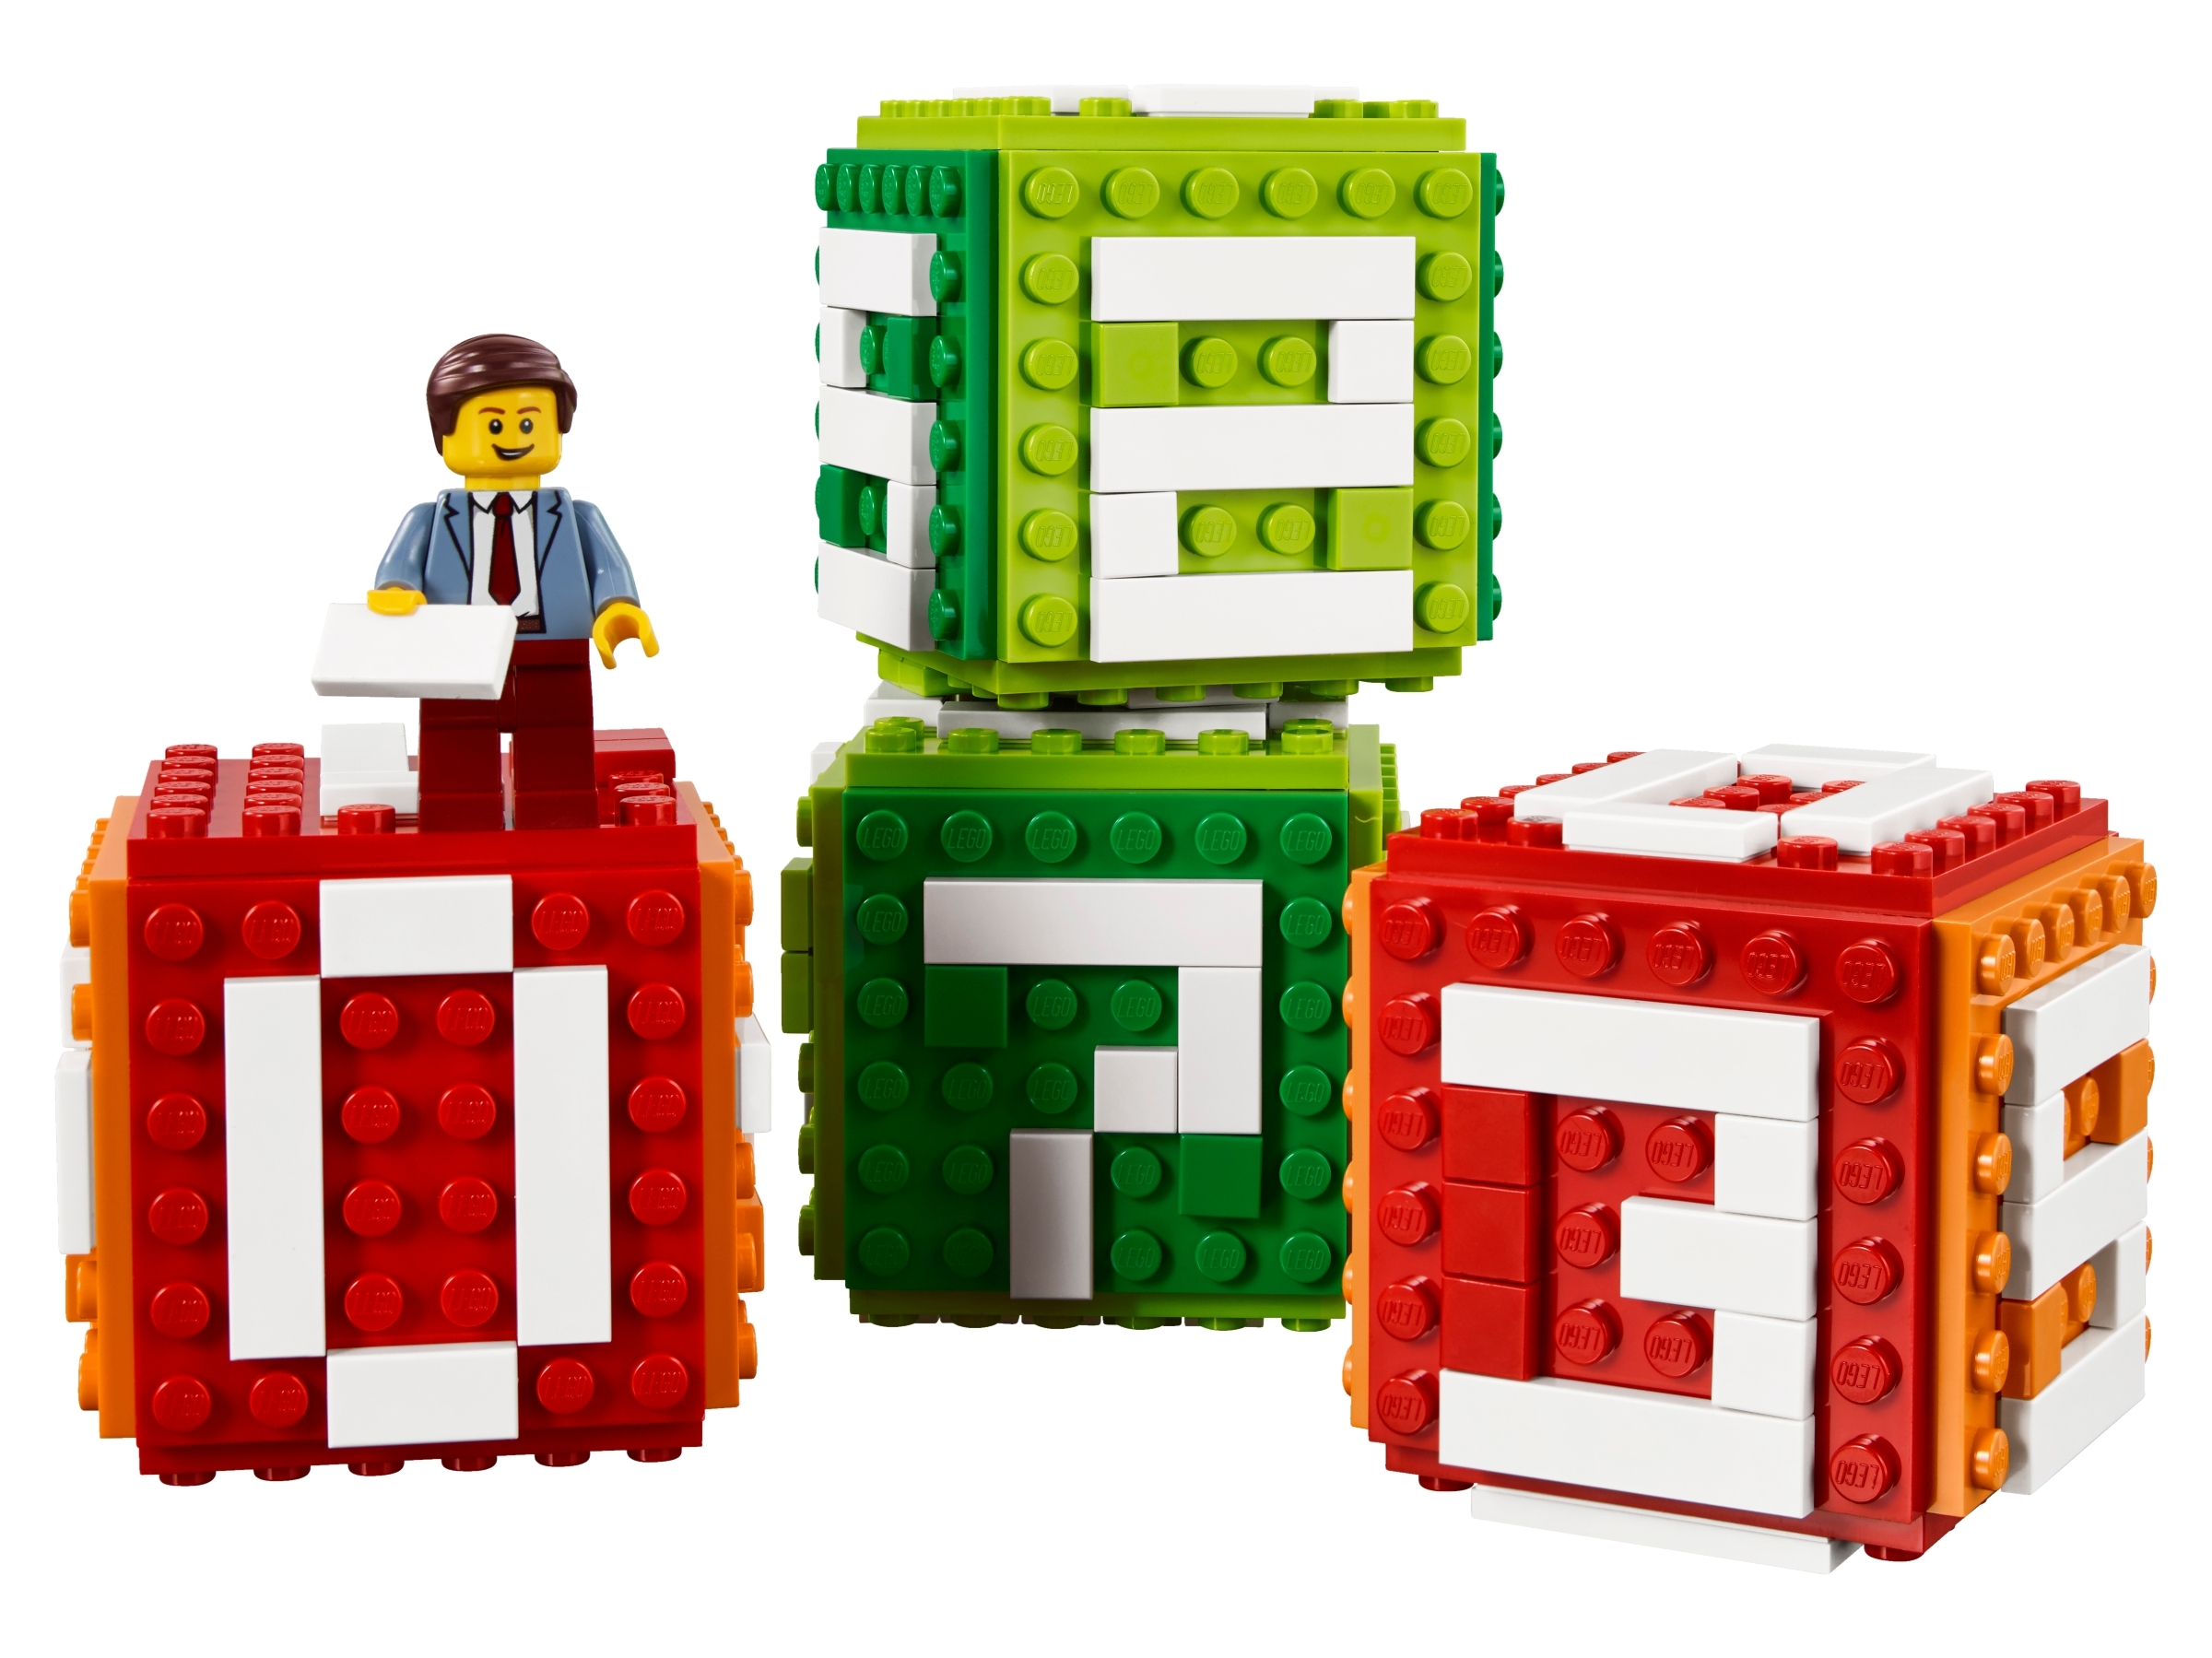 Конструктор LEGO Seasonal 40172 Календарь из кубиков